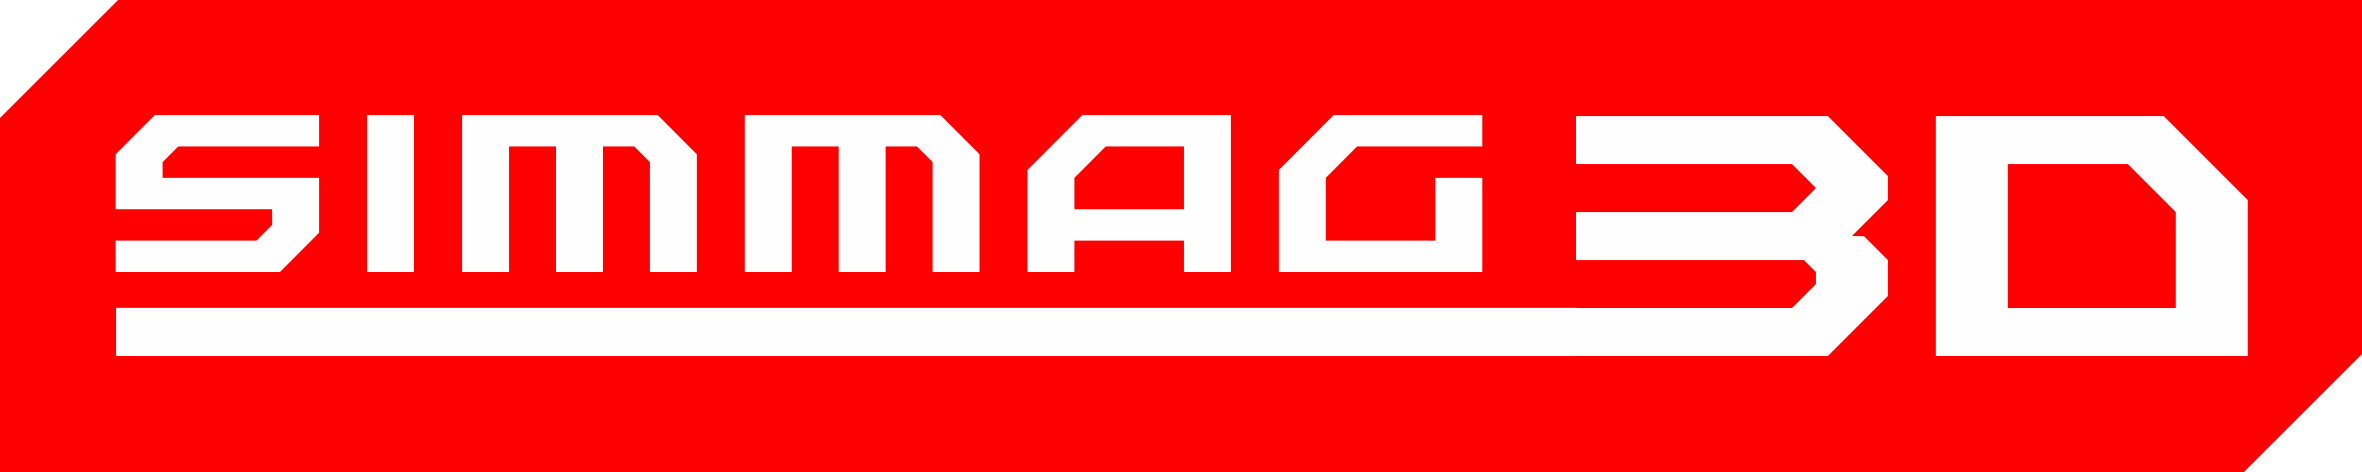 Logotyp systemu SIMMAG3D. Na czerwonym poziomym tle ze ściętymi dwoma rogami biały napis SIMMAG3D wyrażony geometrycznym krojem czcionki